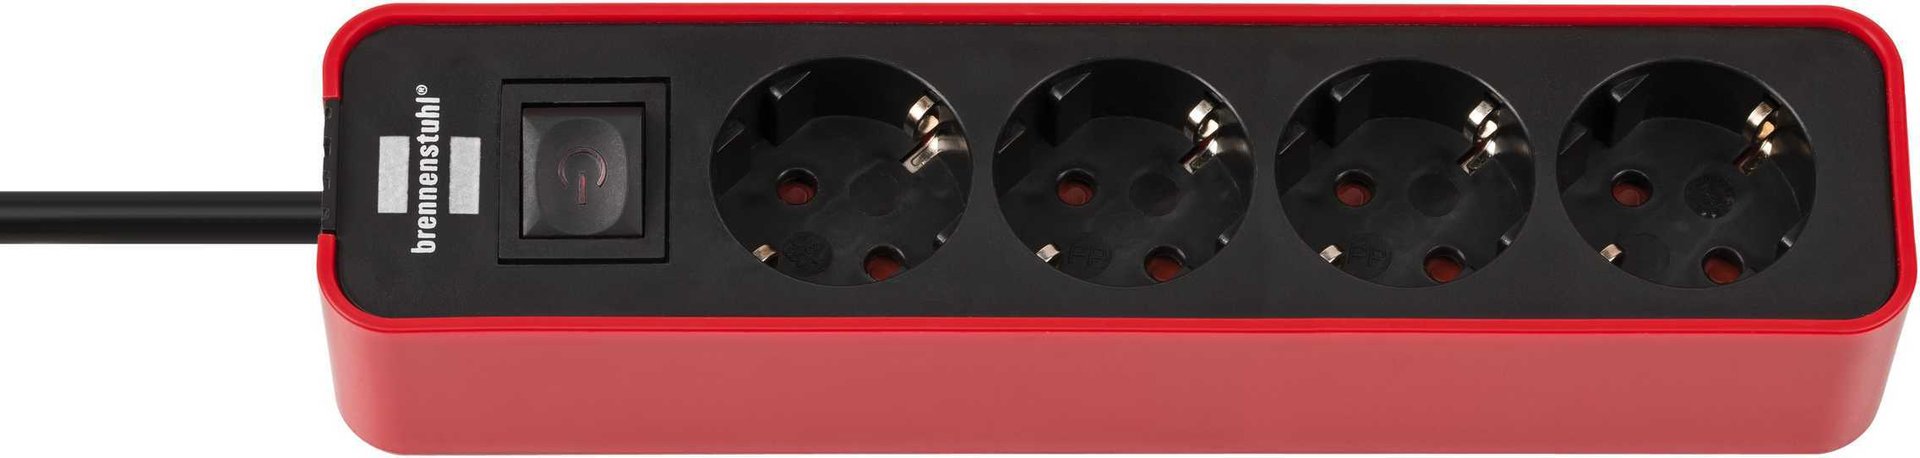 Brennenstuhl Ecolor Steckdosenleiste 4-fach (Steckerleiste mit Schalter und 1,5m Kabel) rot/schwarz